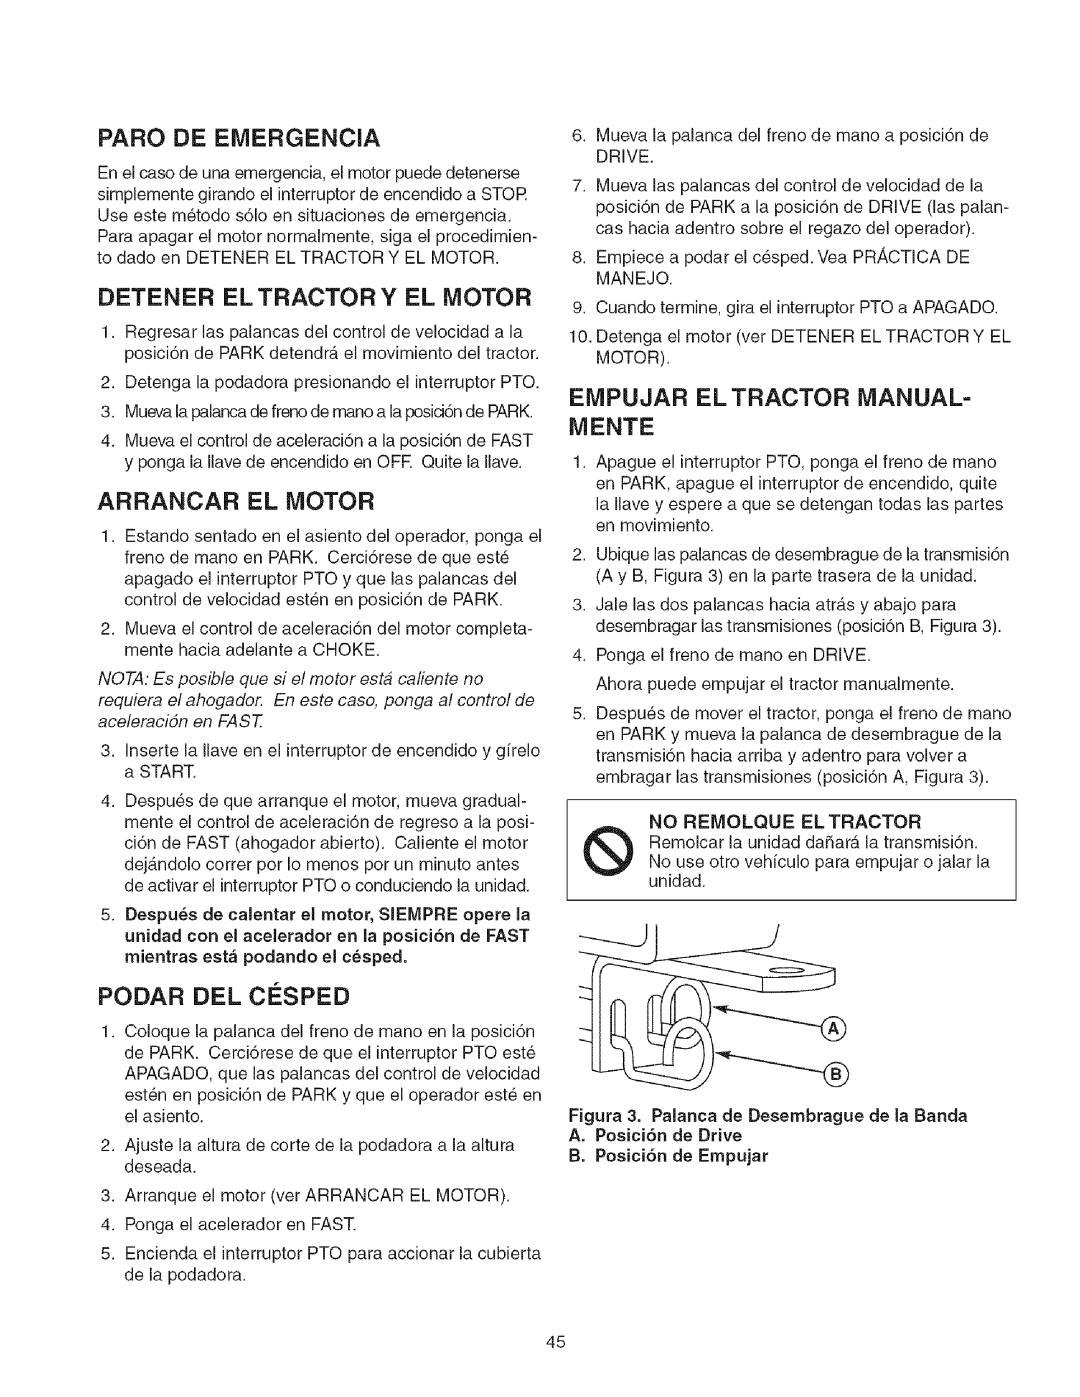 Craftsman 107.2777 Paro De Emergencia, Detener El Tractor Y El Motor, Arrancar El Motor, Empujar El Tractor Manual- Mente 